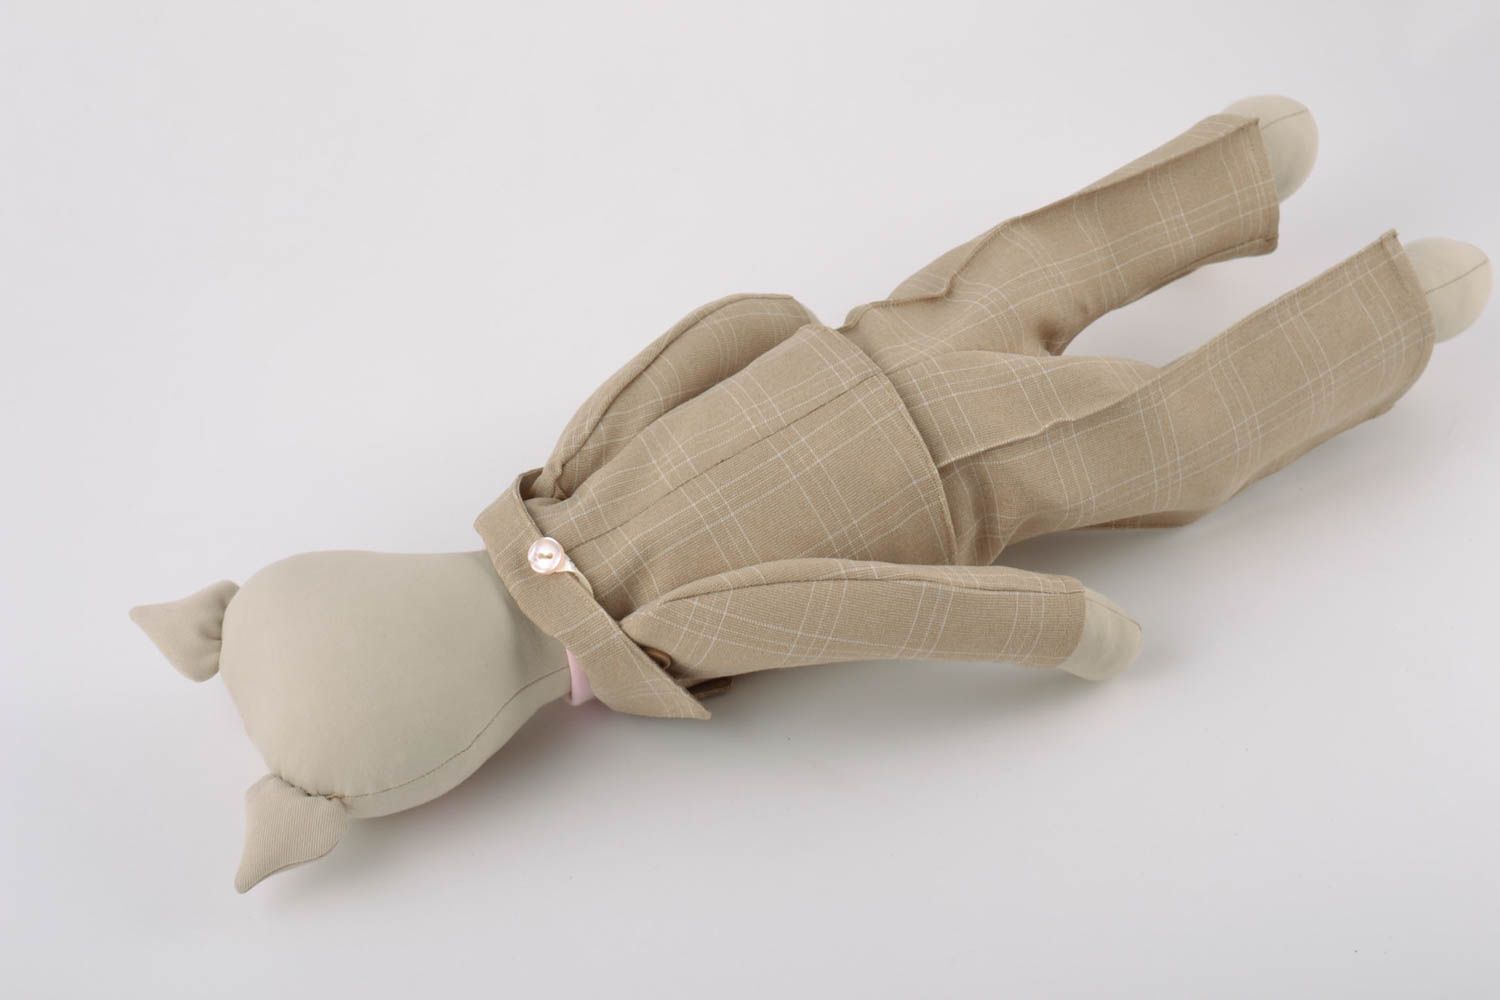 Textil Kuscheltier Kater im Anzug aus Leinen Spielzeug für Kinder  foto 5